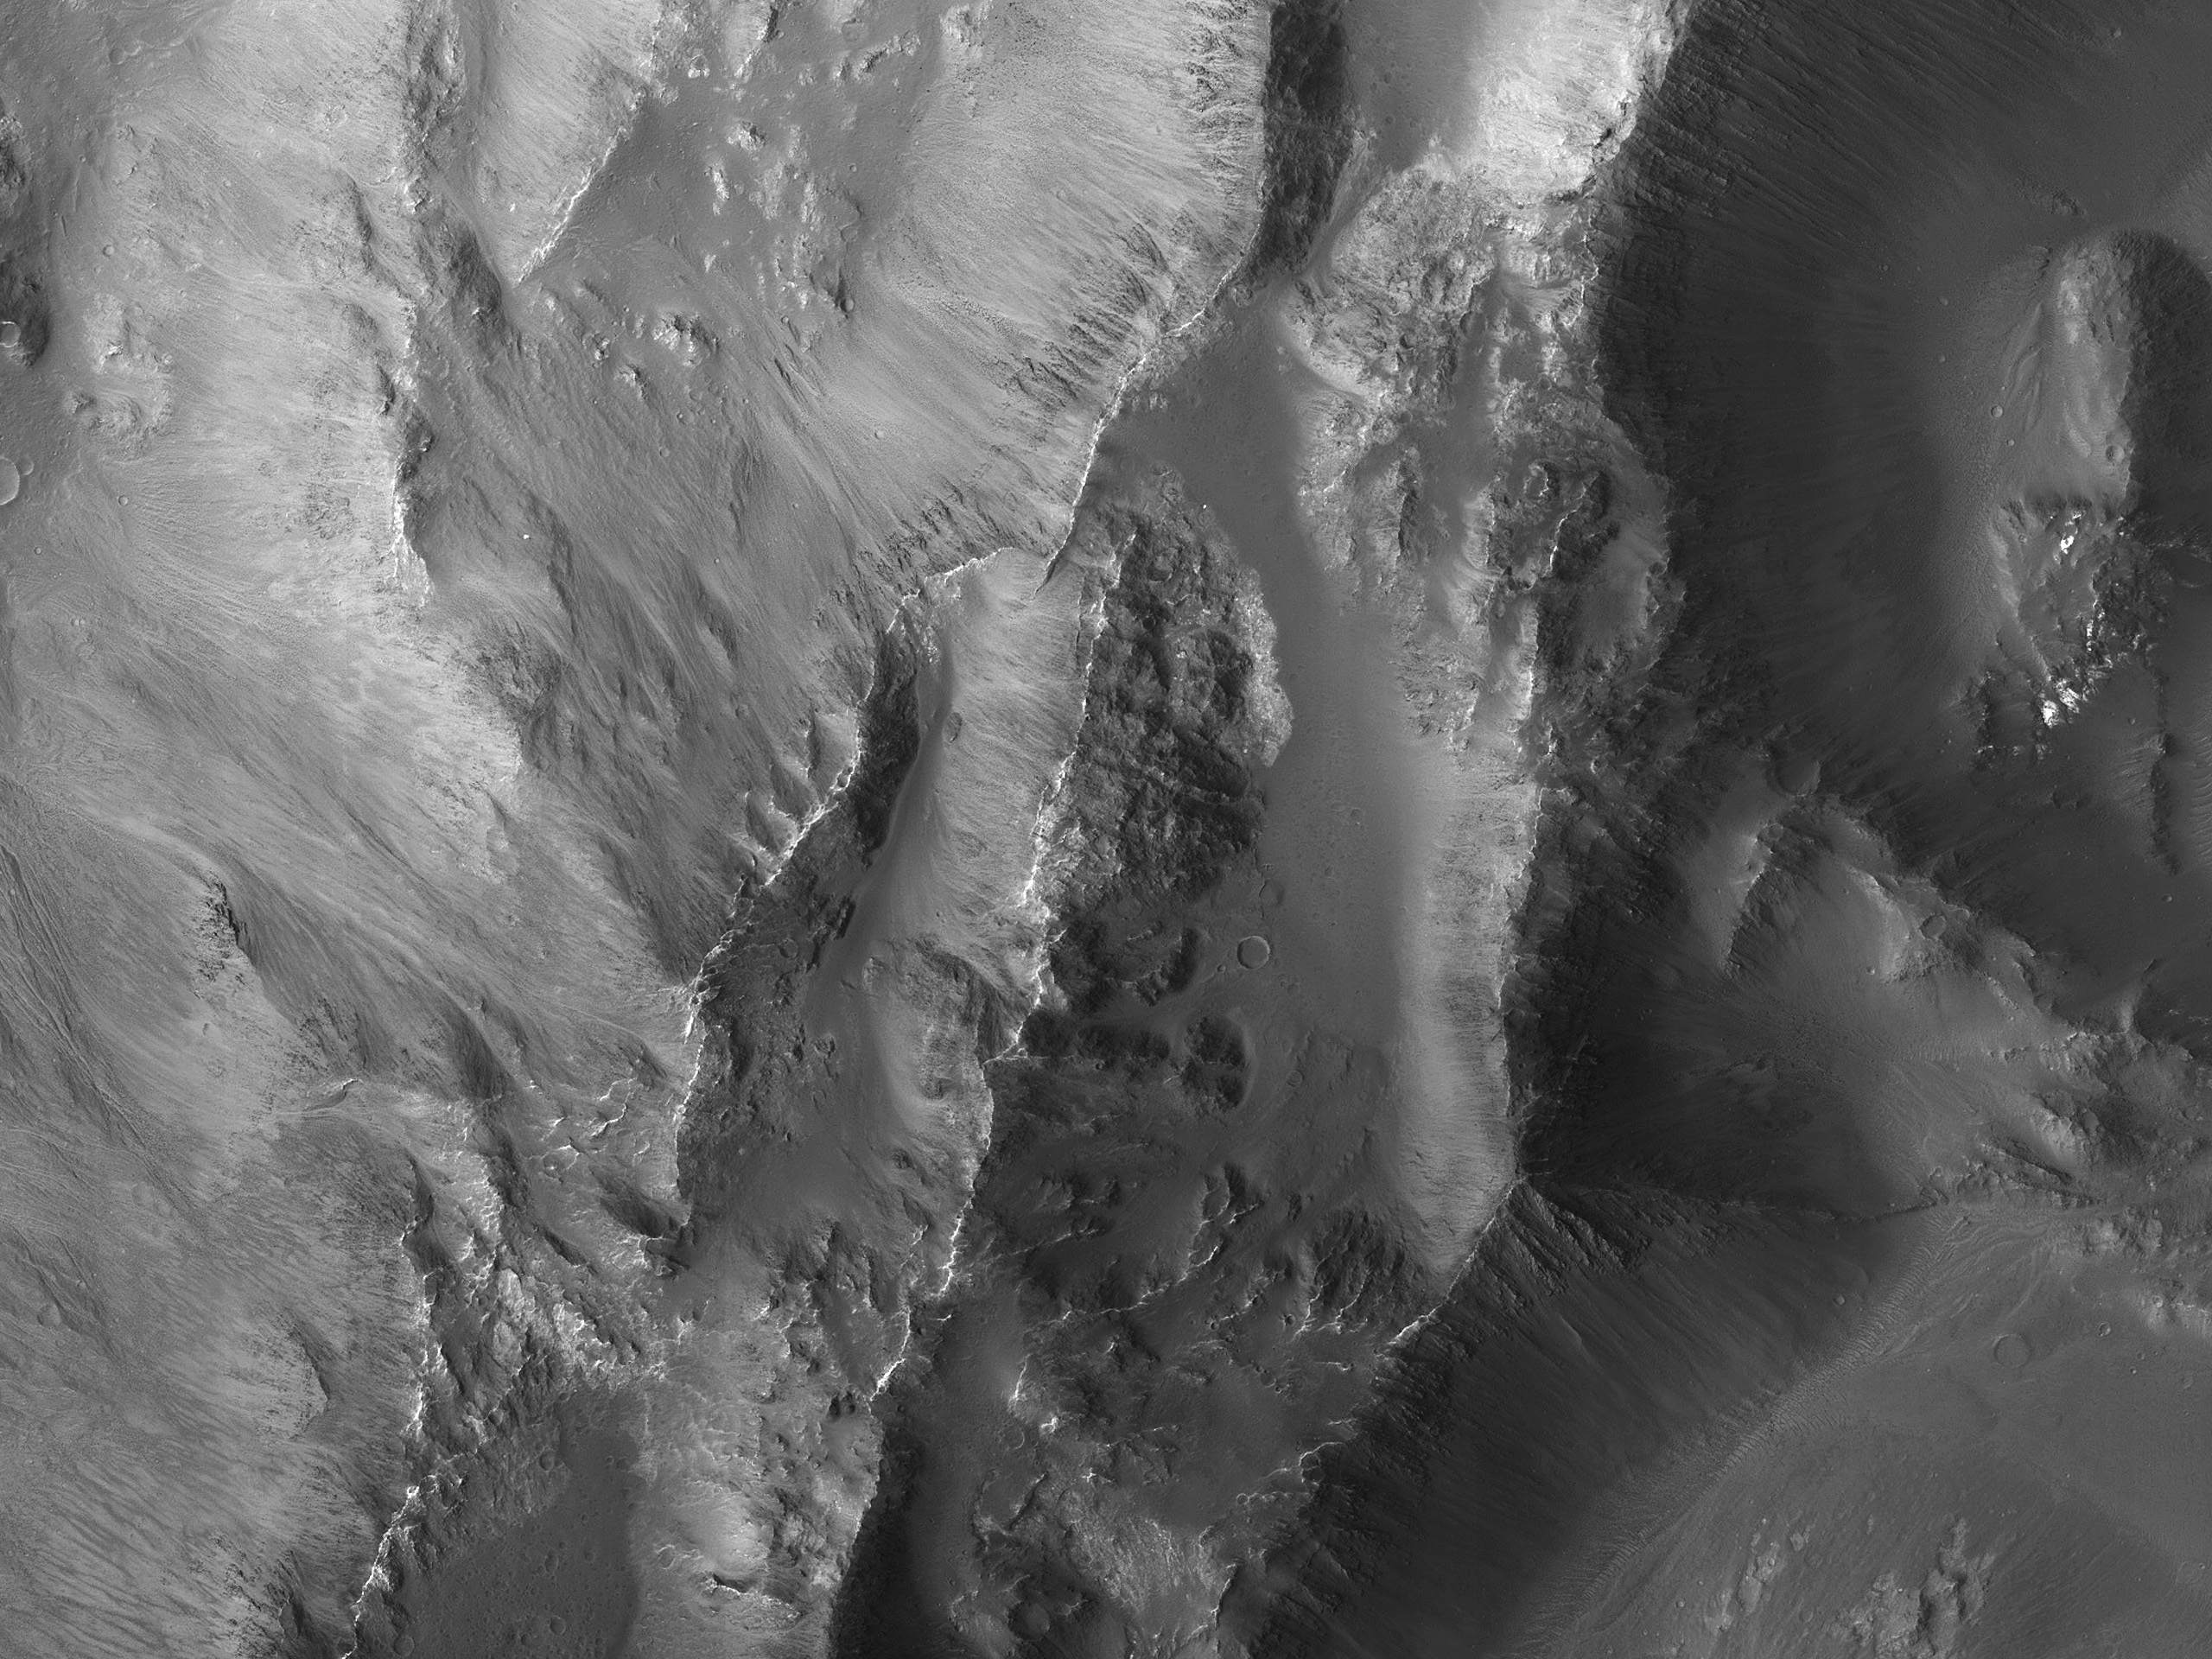 הקצה המערבית של מכתש פגיעה ב-Coprates Chasma